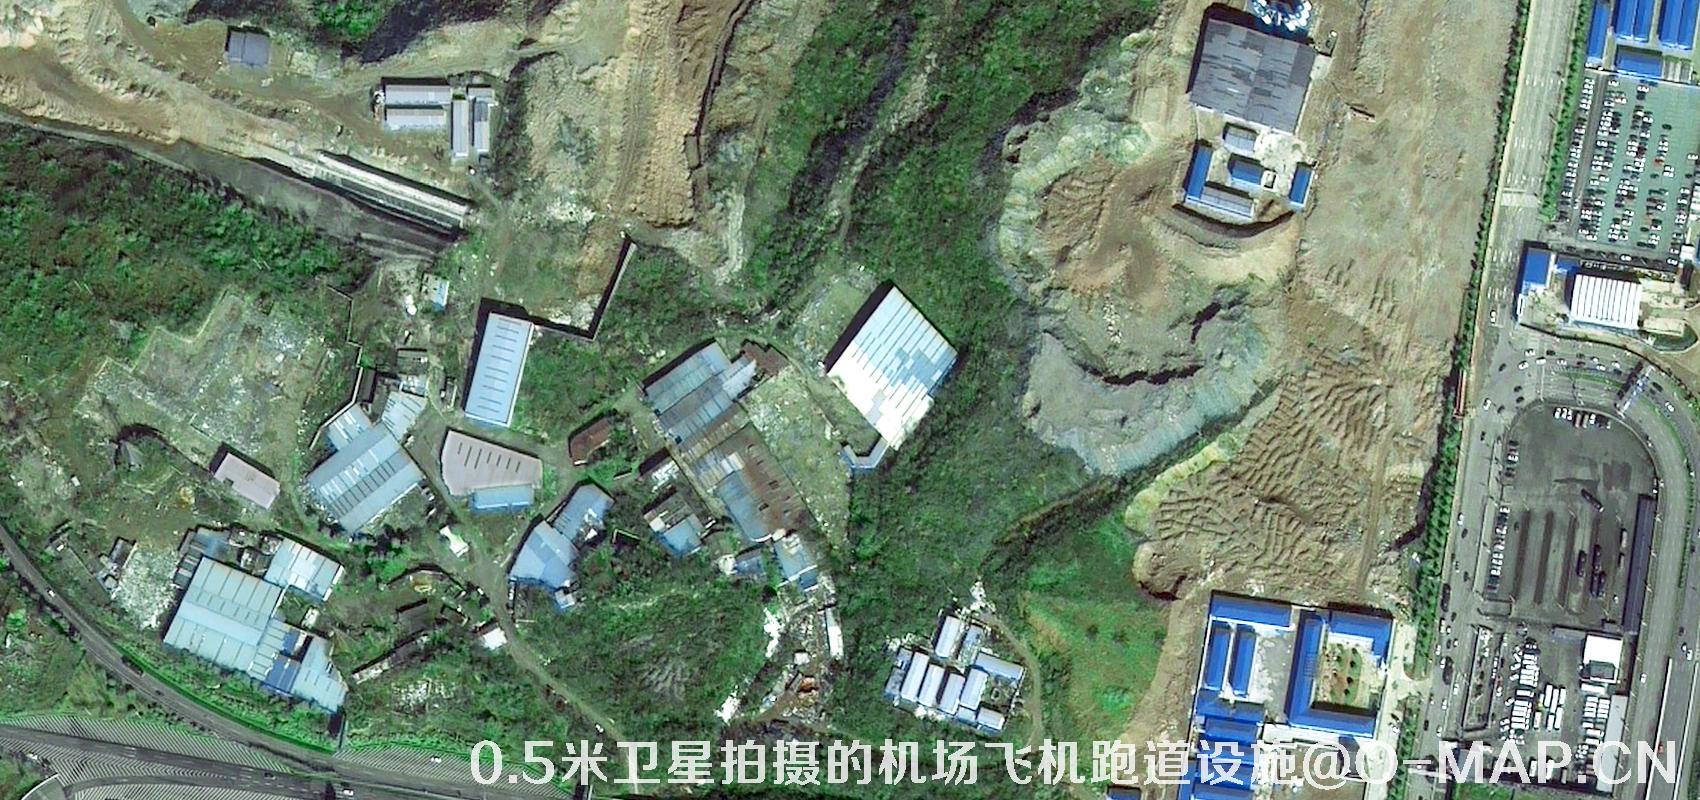 0.5米分辨率卫星拍摄的机场飞机跑道设施卫星图片